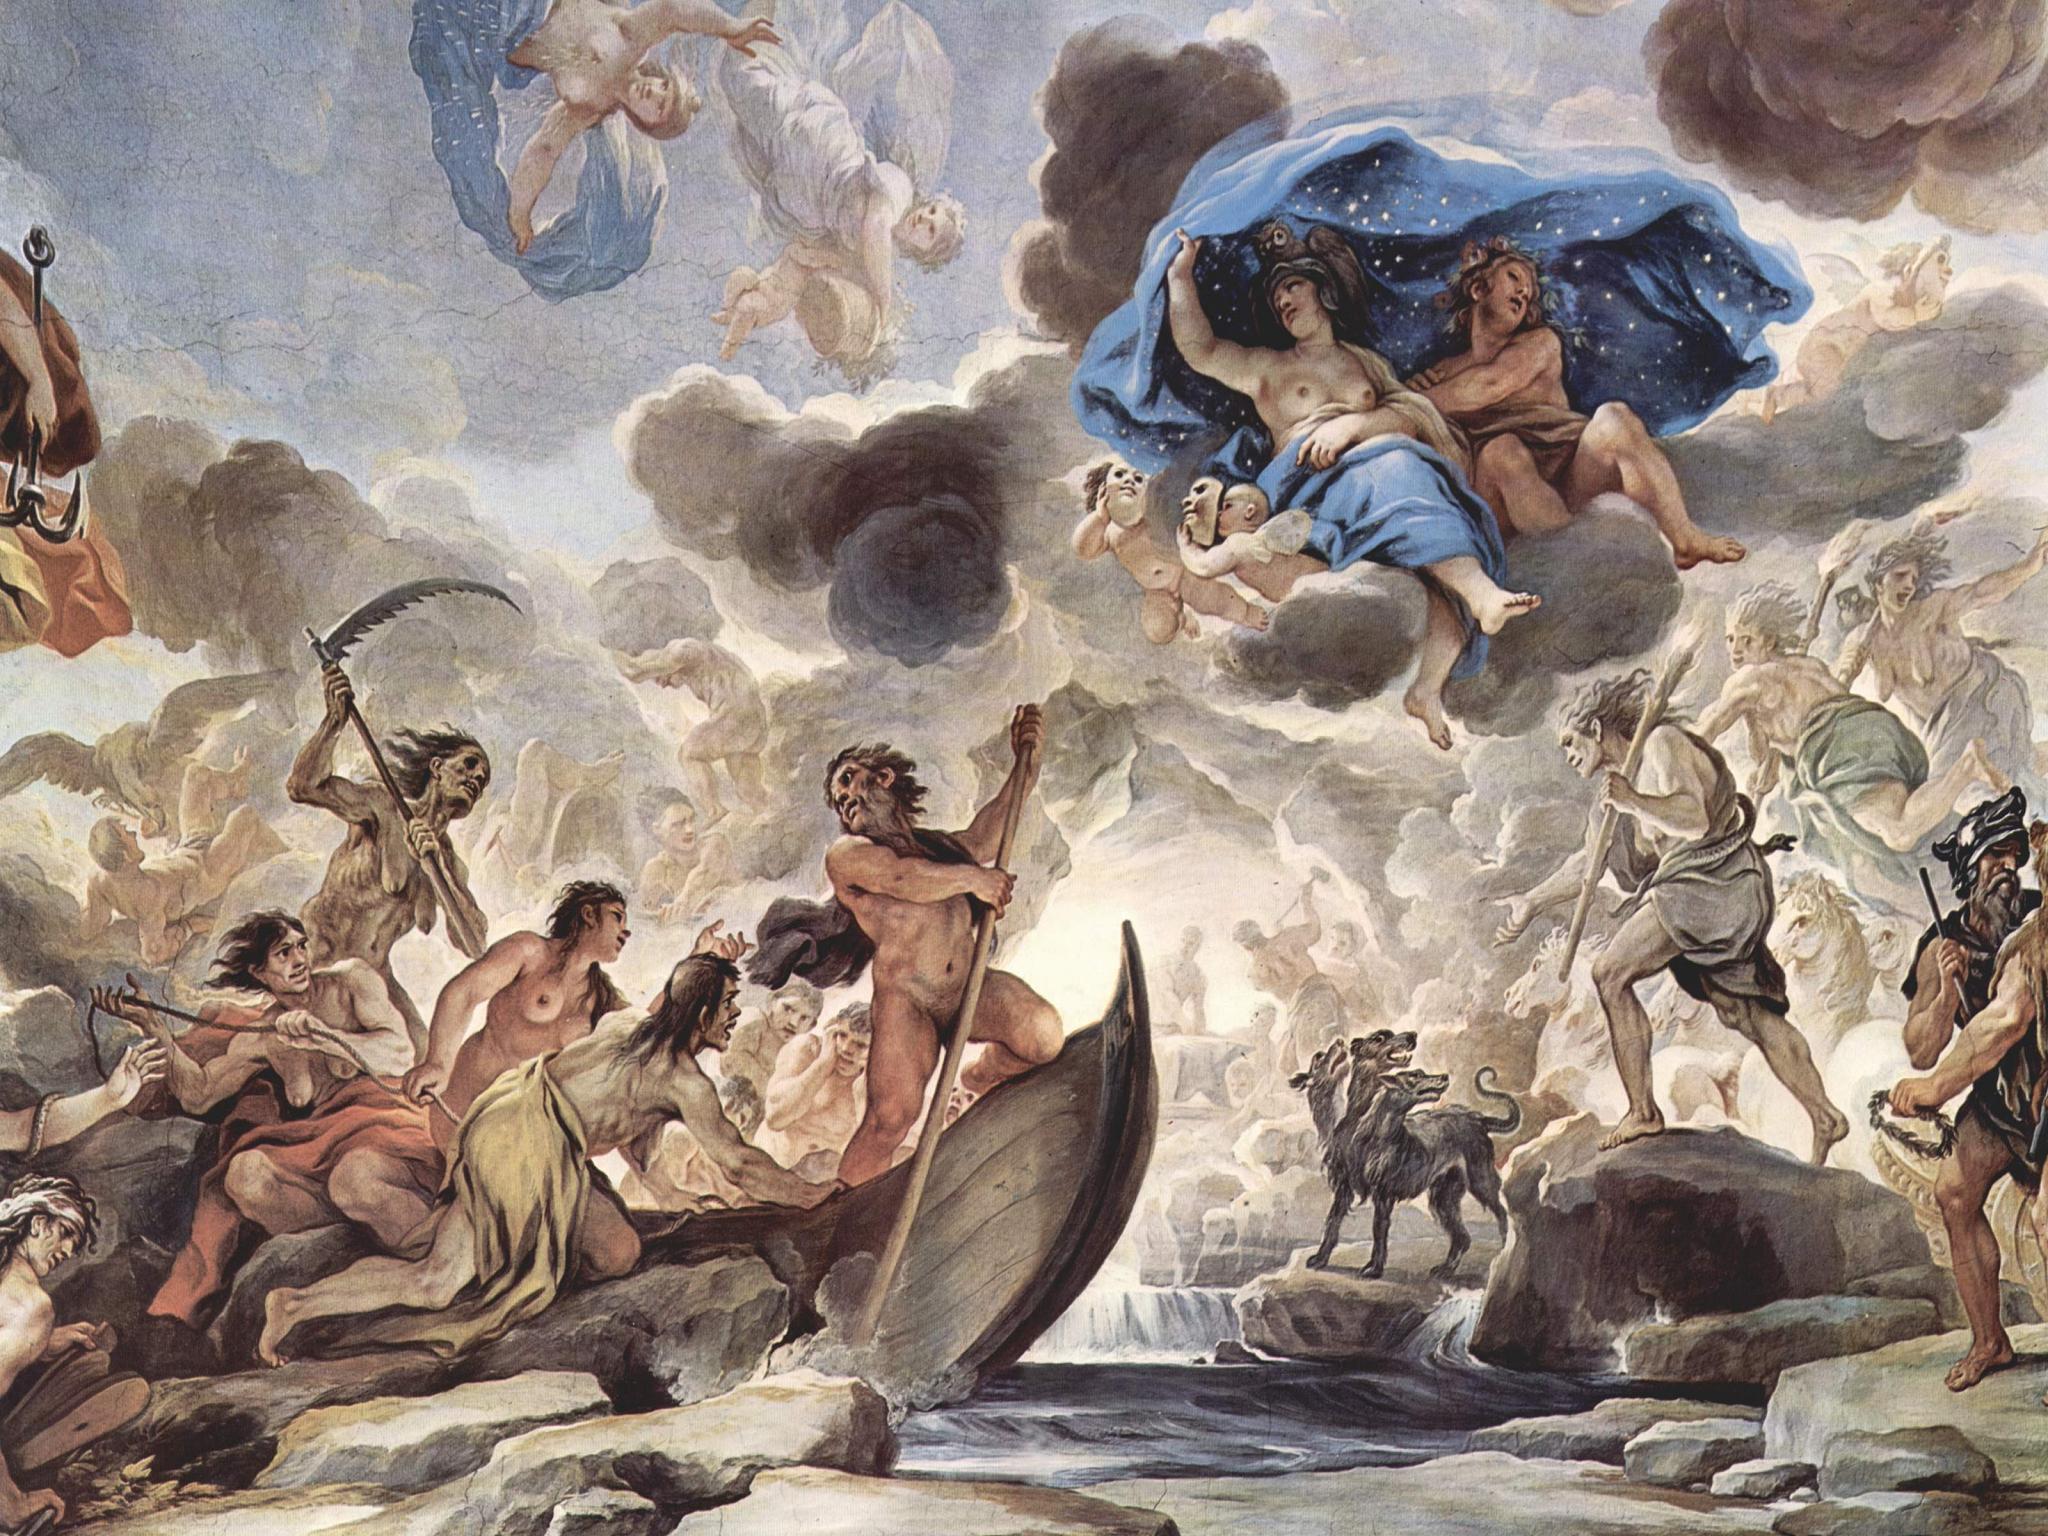 Greek Mythology Image Icons Wallpaper And Photos On